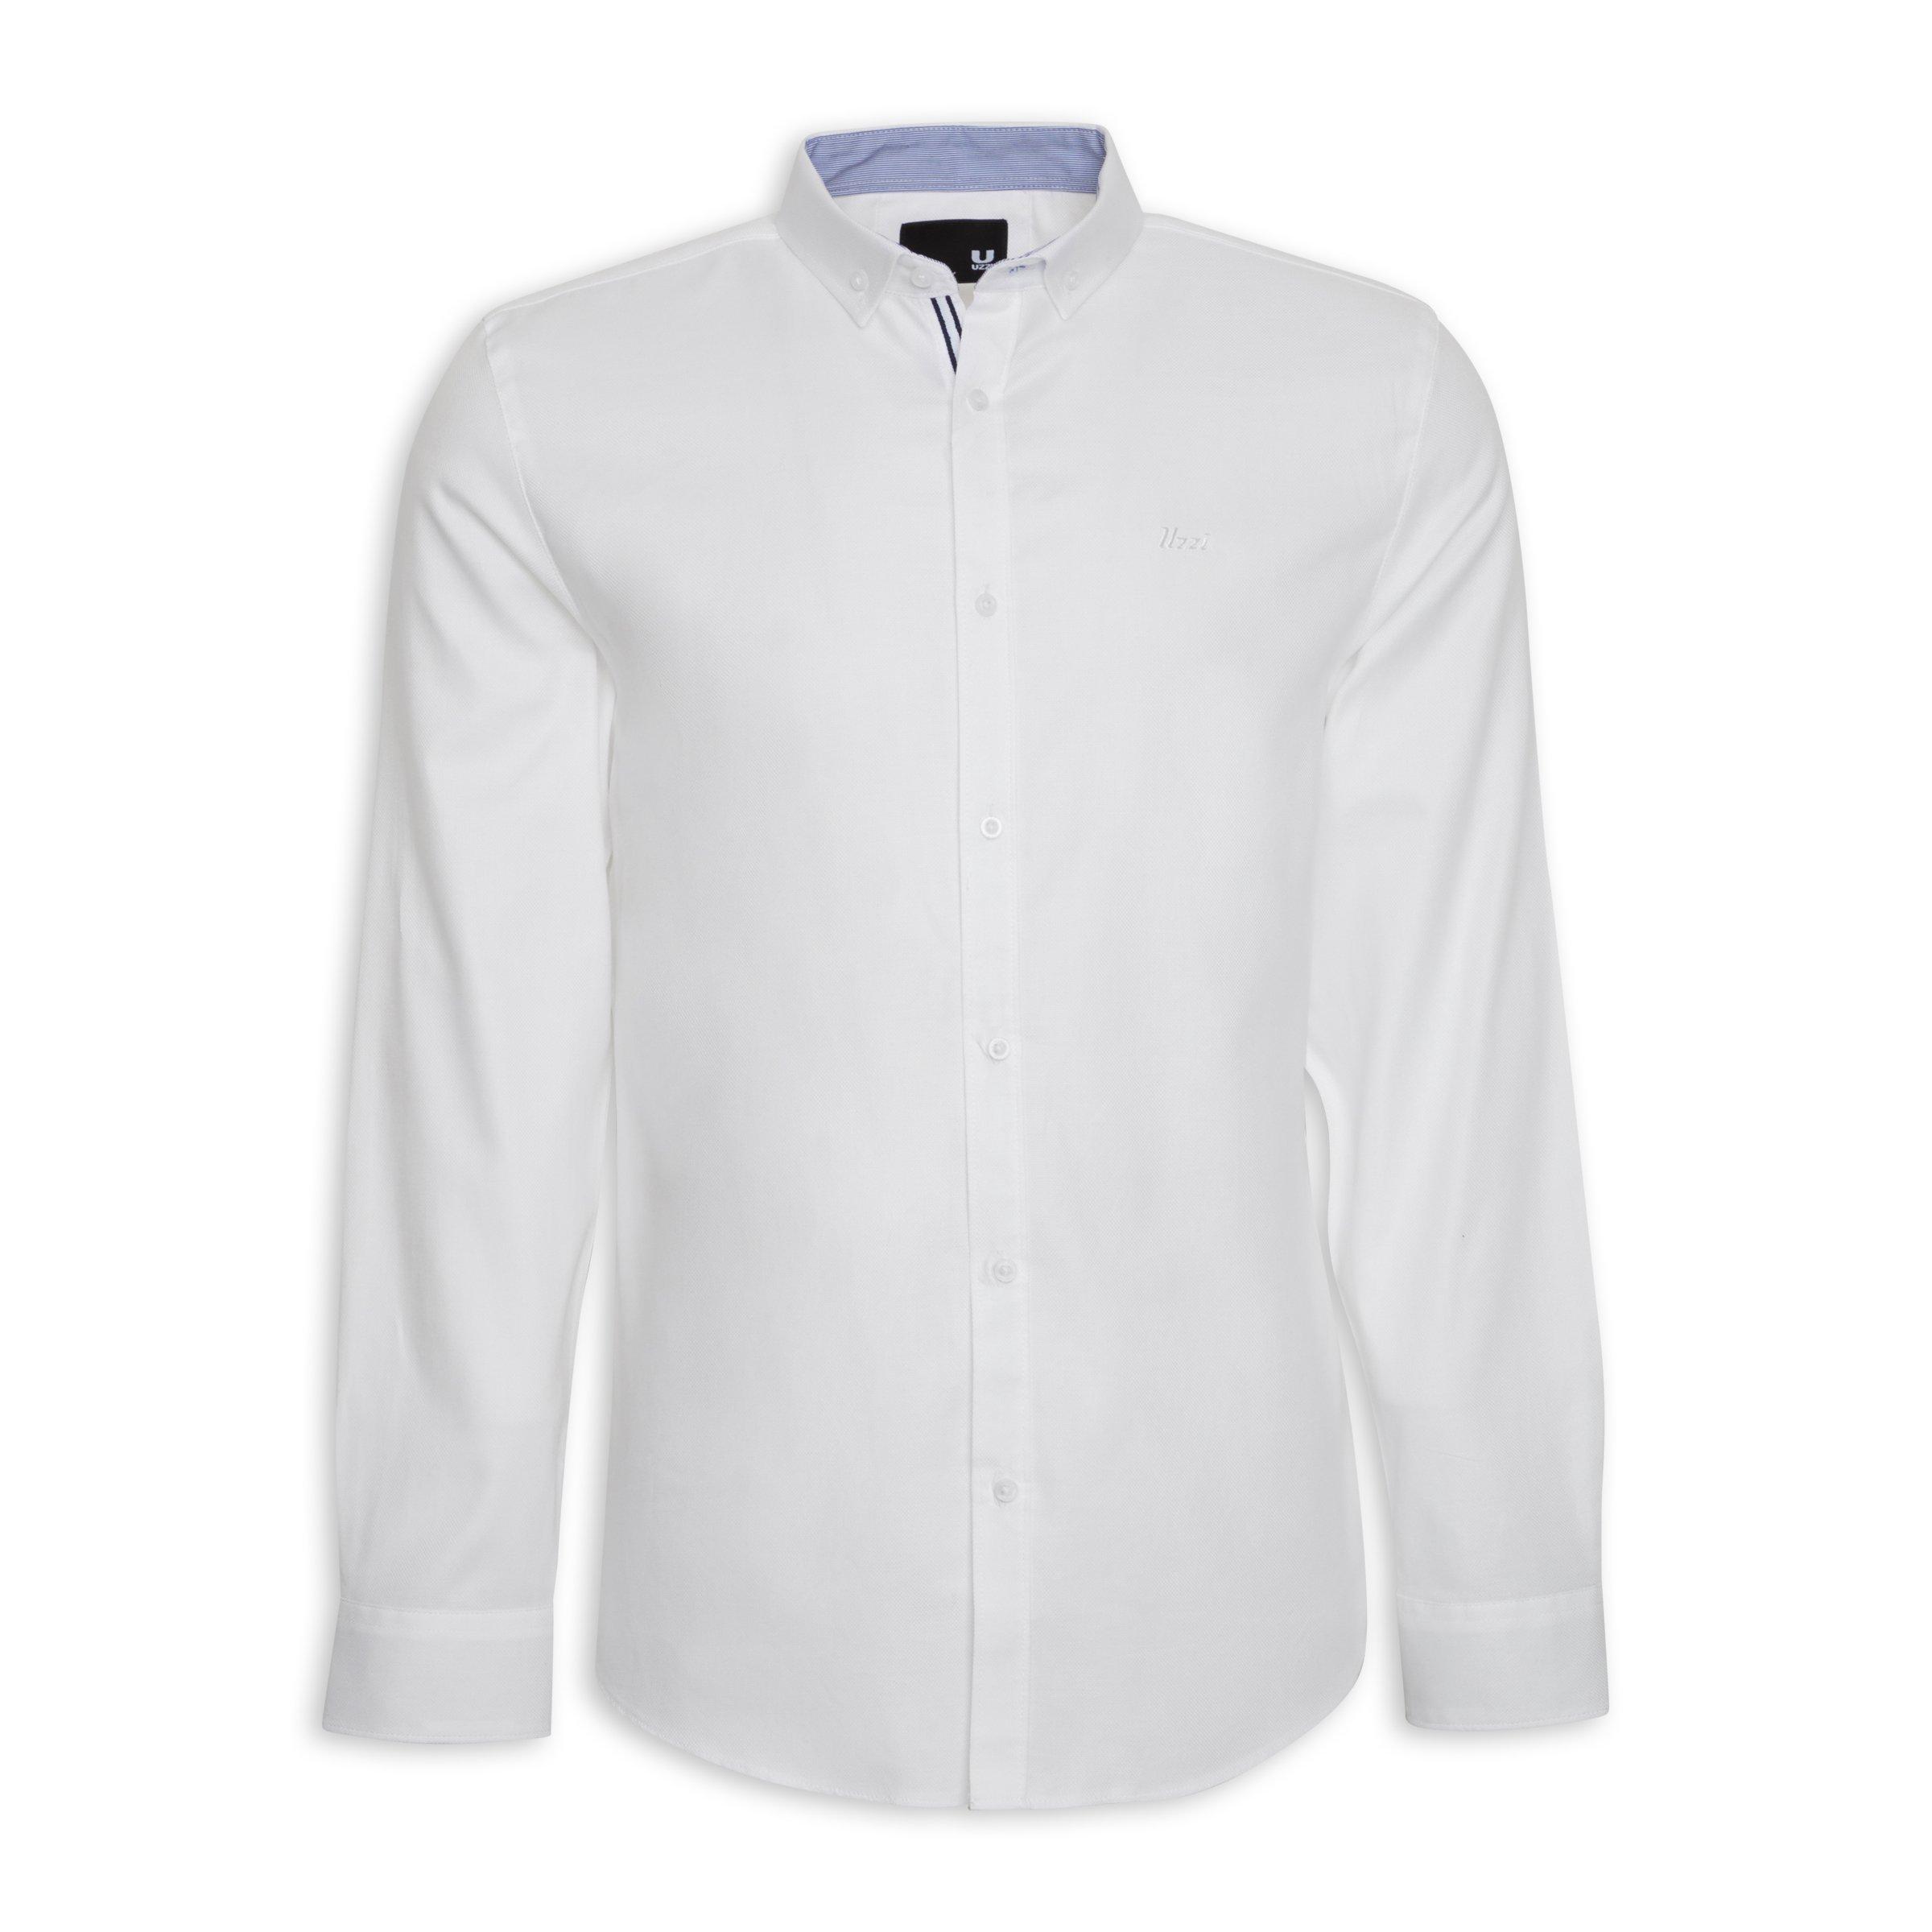 Buy UZZI White Shirt Online | Truworths